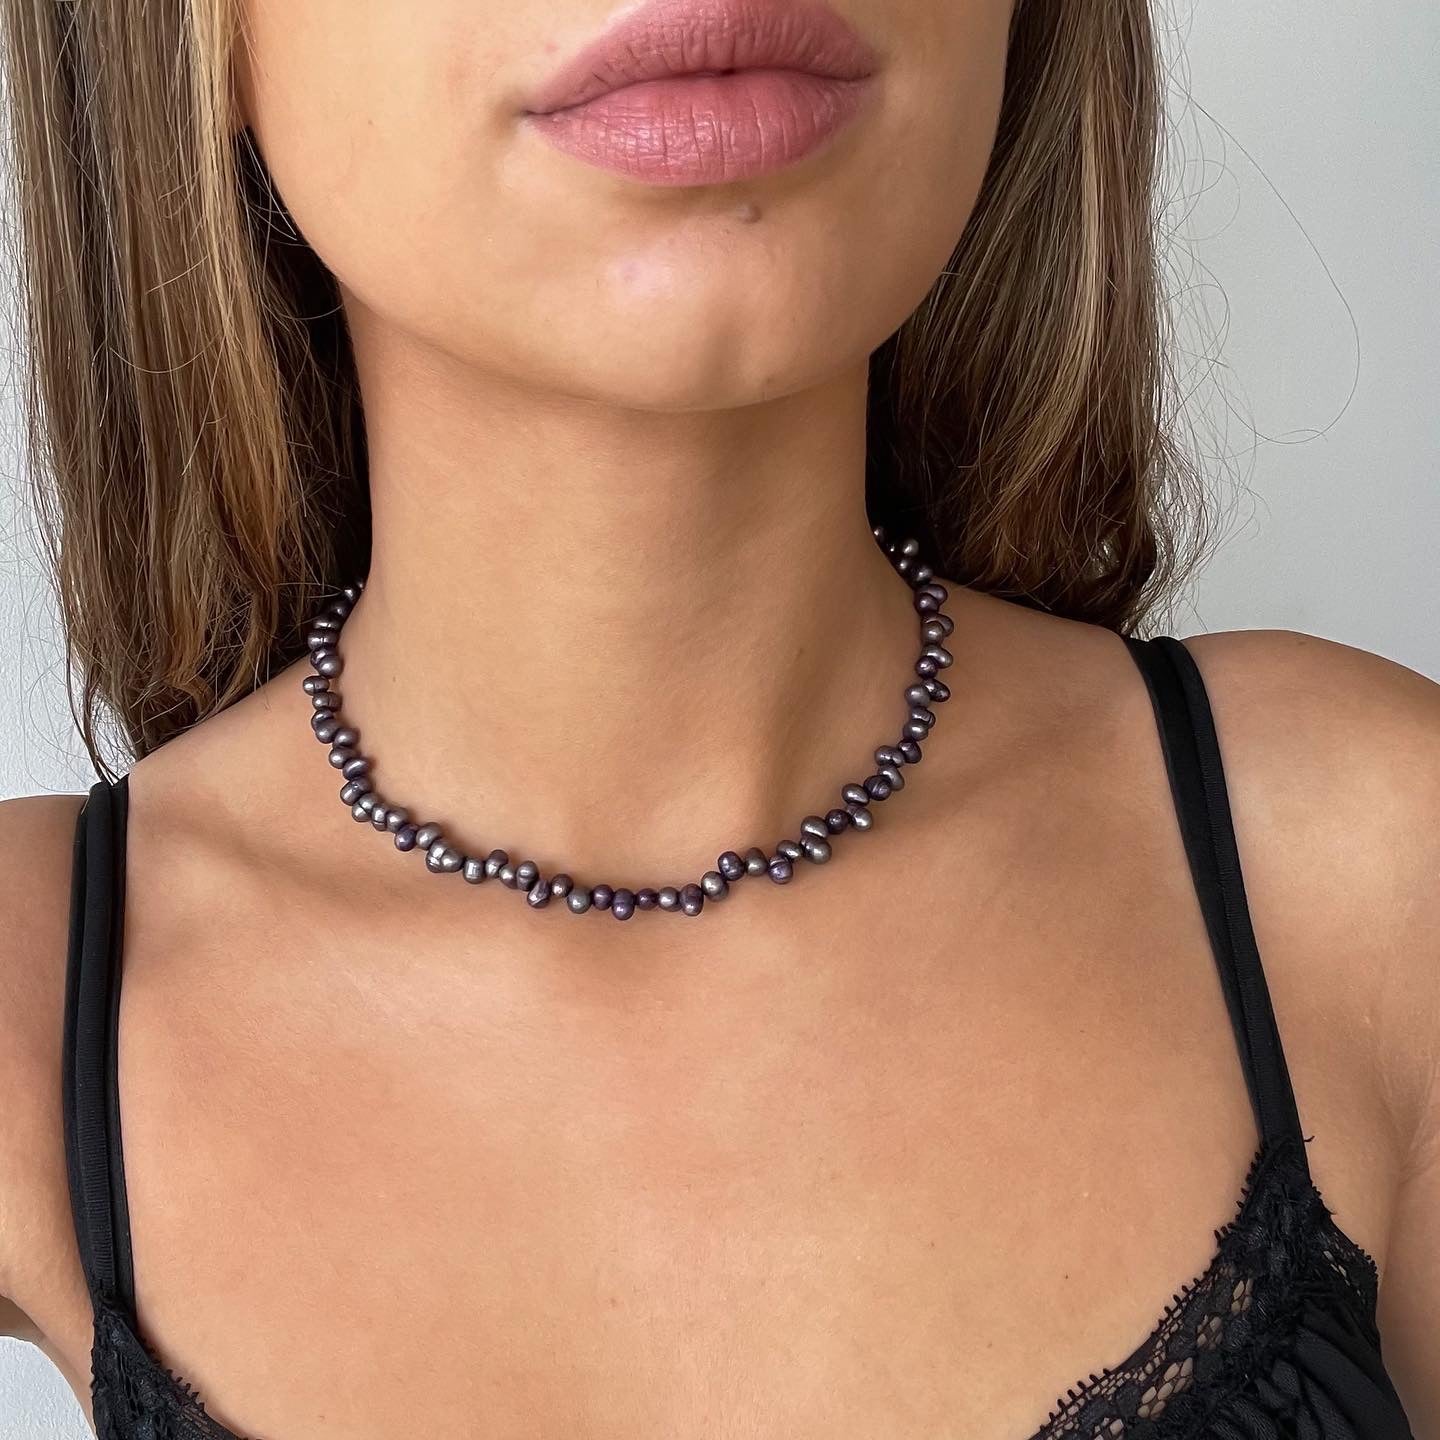 Morella necklace